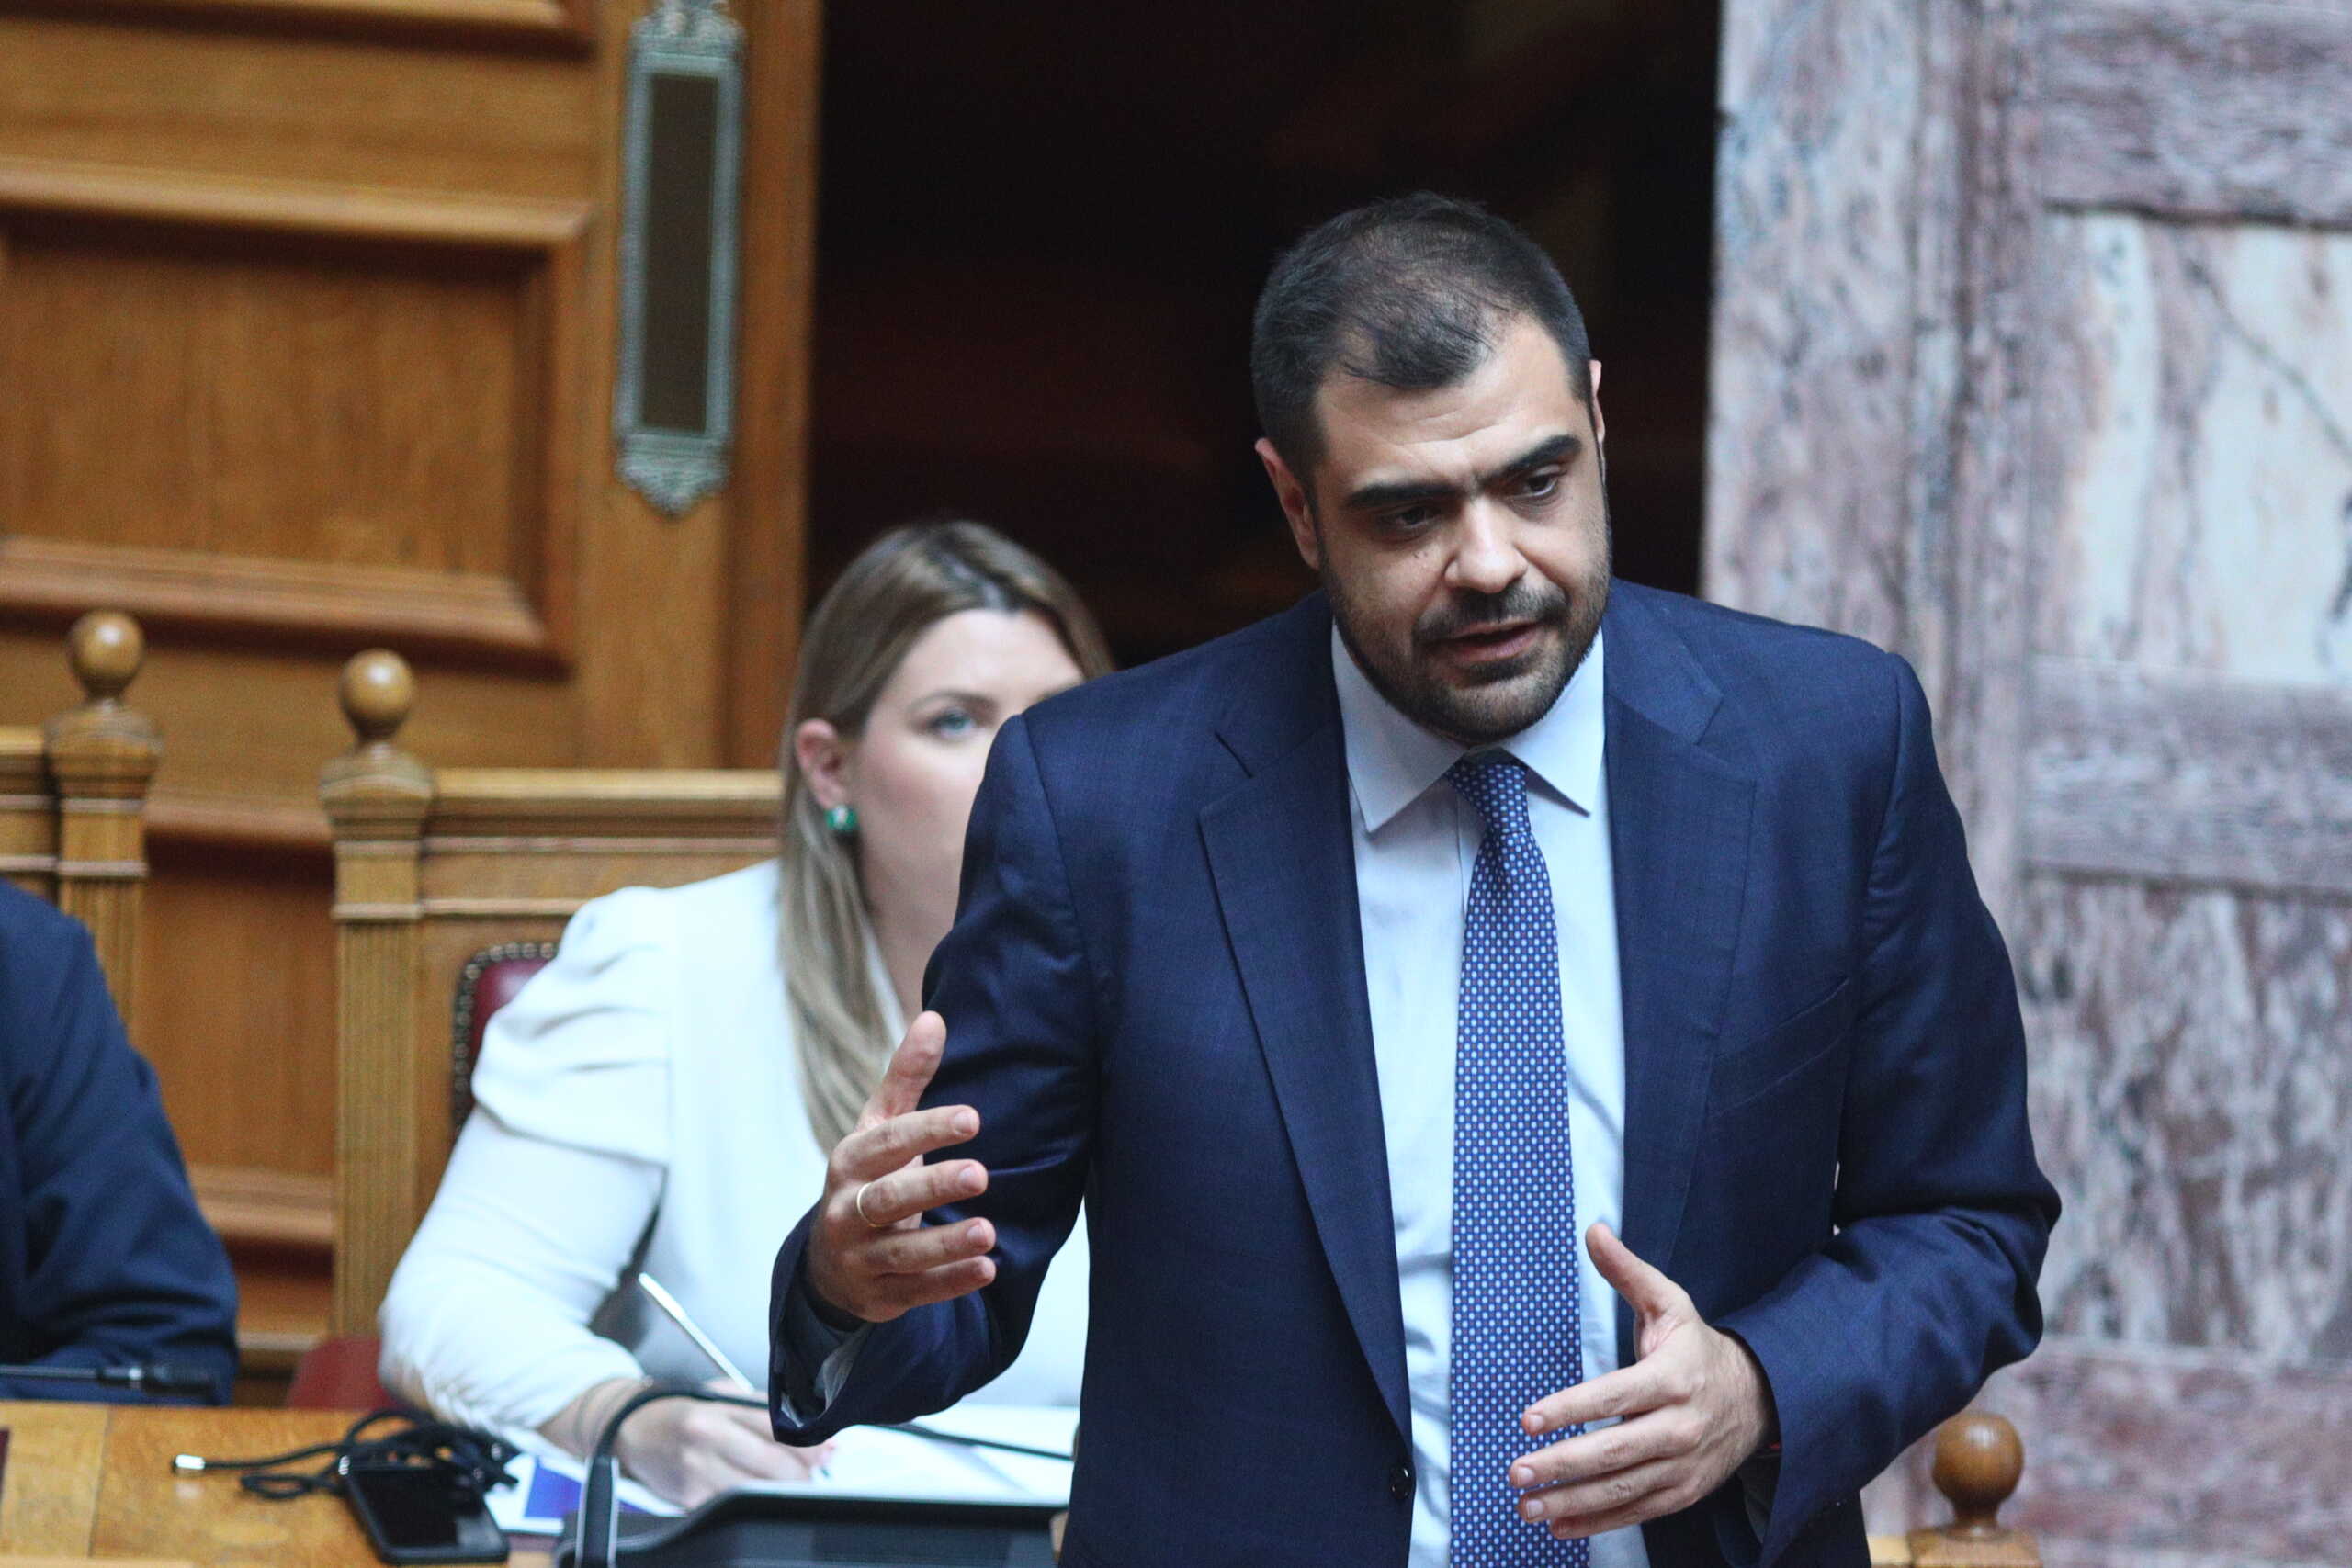 Παύλος Μαρινάκης: Ο ΣΥΡΙΖΑ στέλνει υπόμνημα για τους Σπαρτιάτες, ενώ η προθεσμία έληξε στις 20 του μήνα